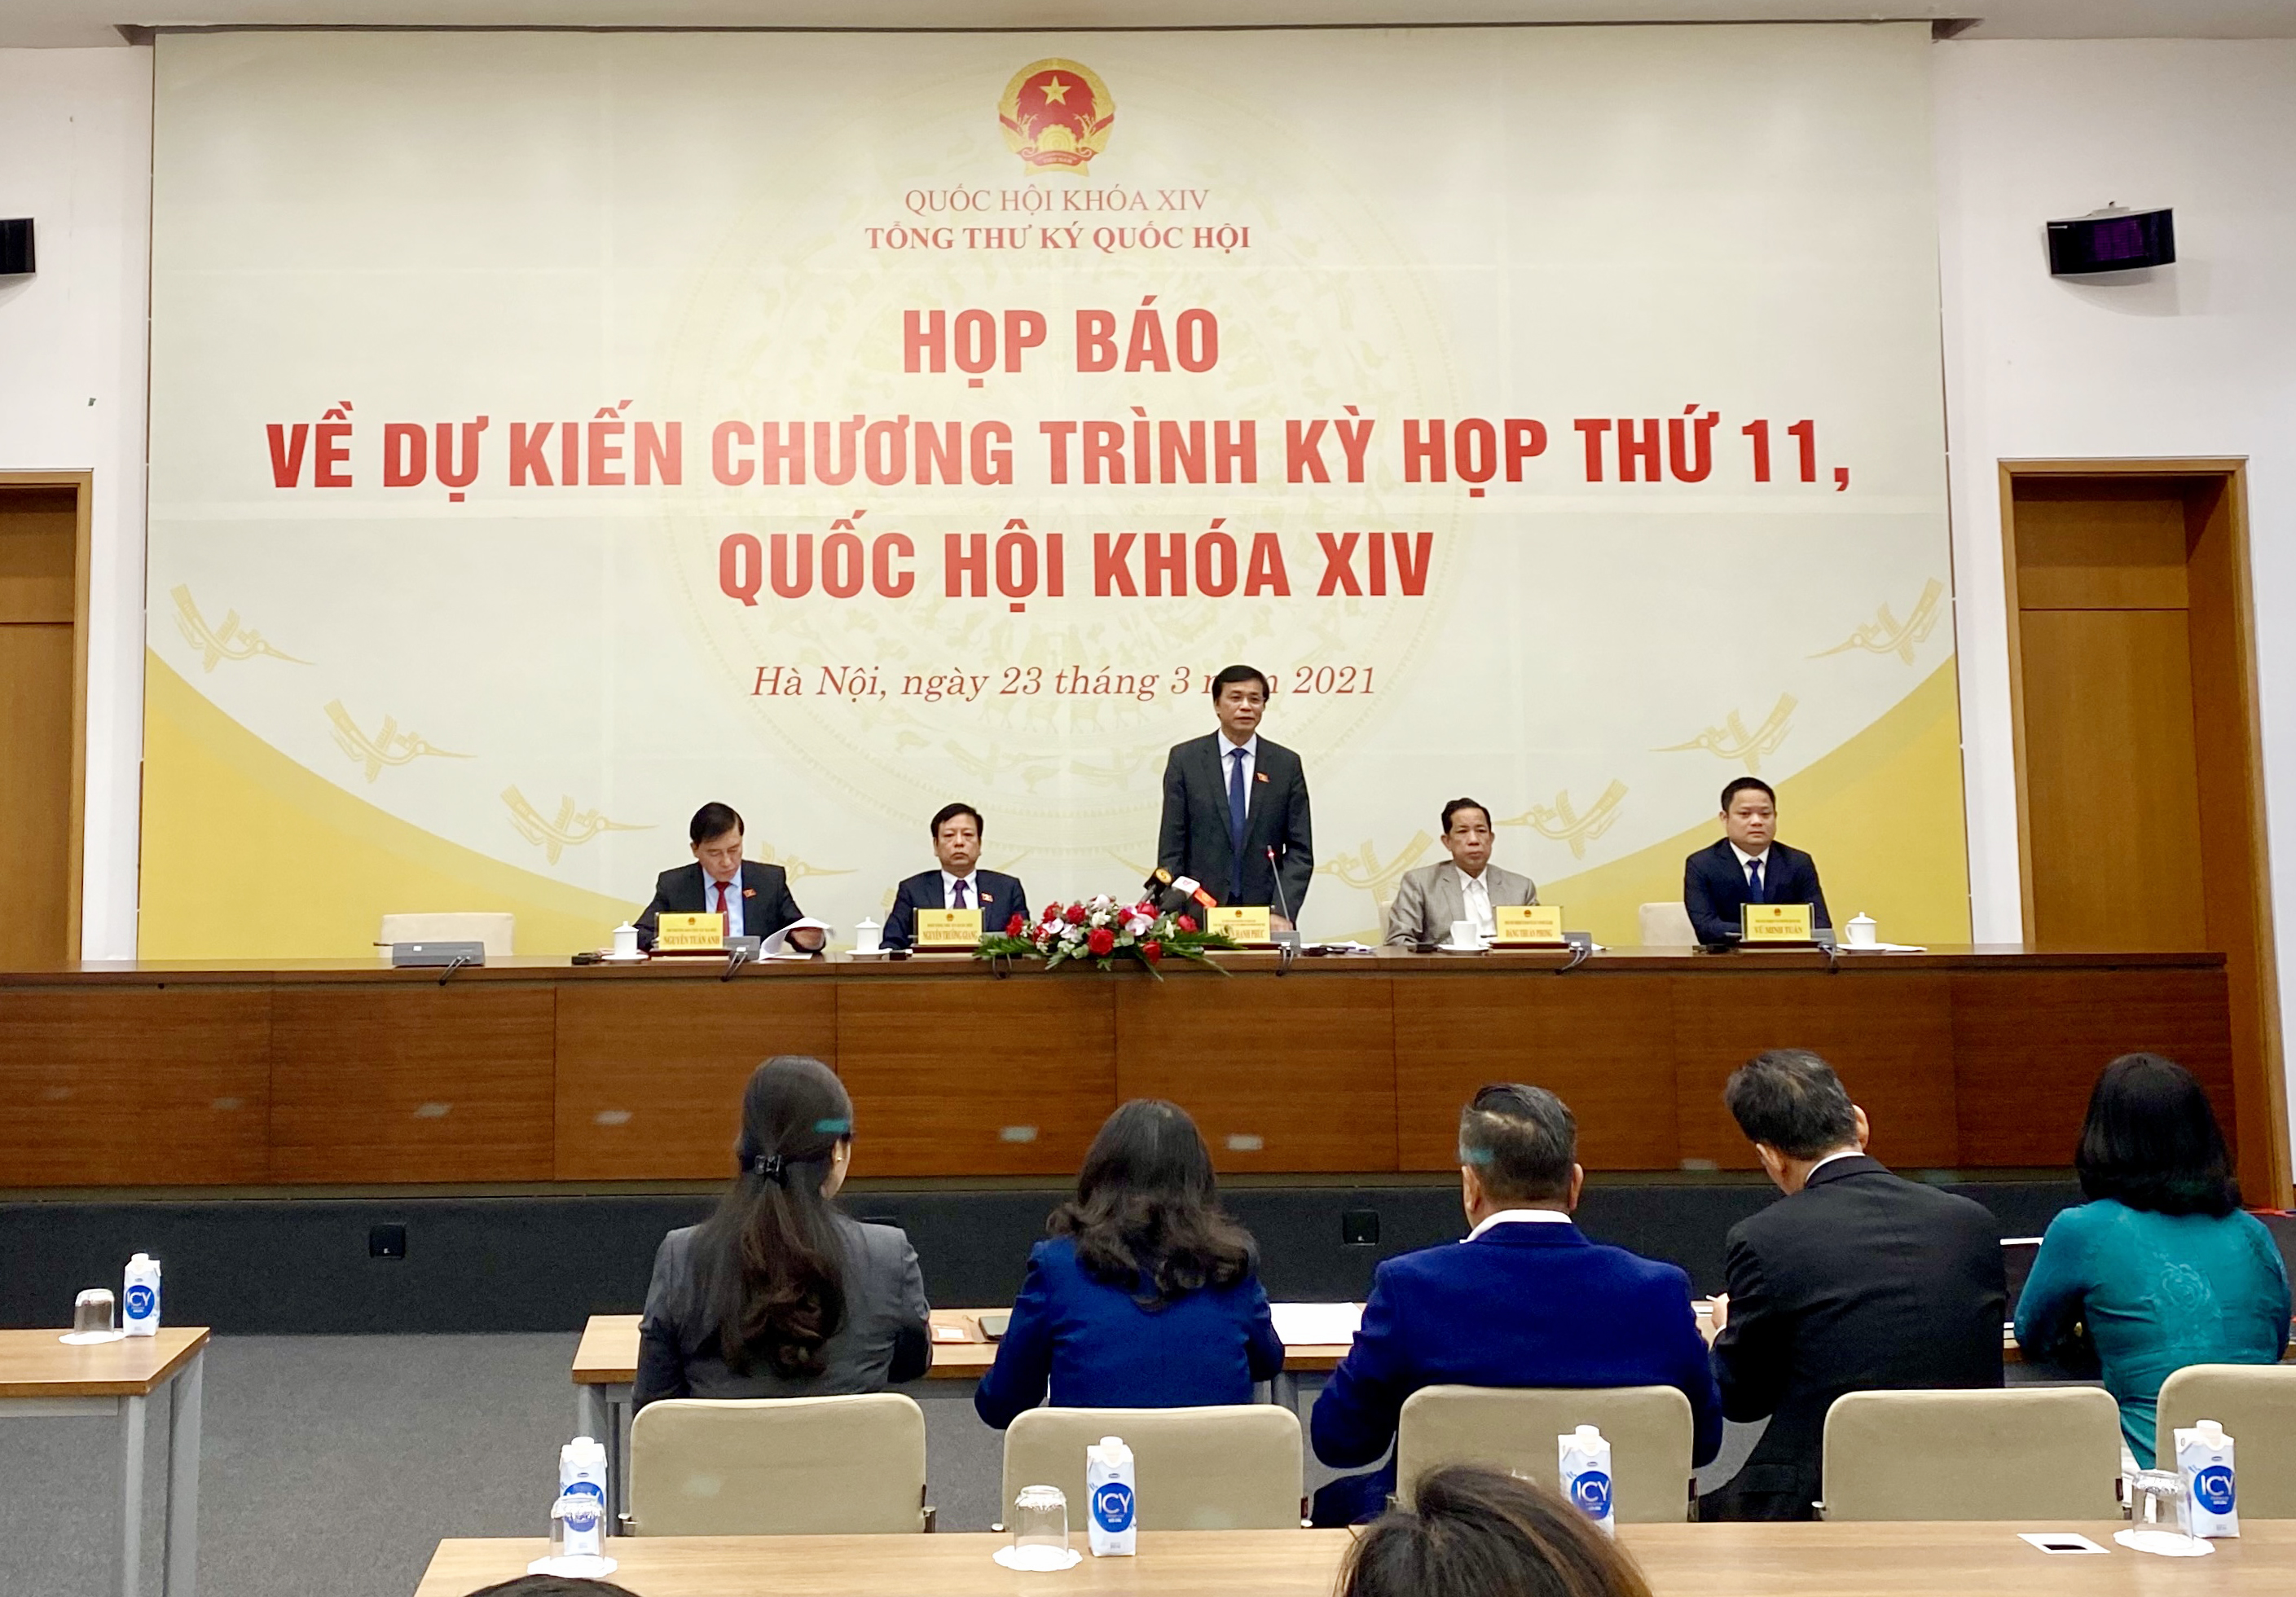 Tổng Thư ký Quốc hội Nguyễn Hạnh Phúc trả lời câu hỏi của các phóng viên tại buổi họp báo